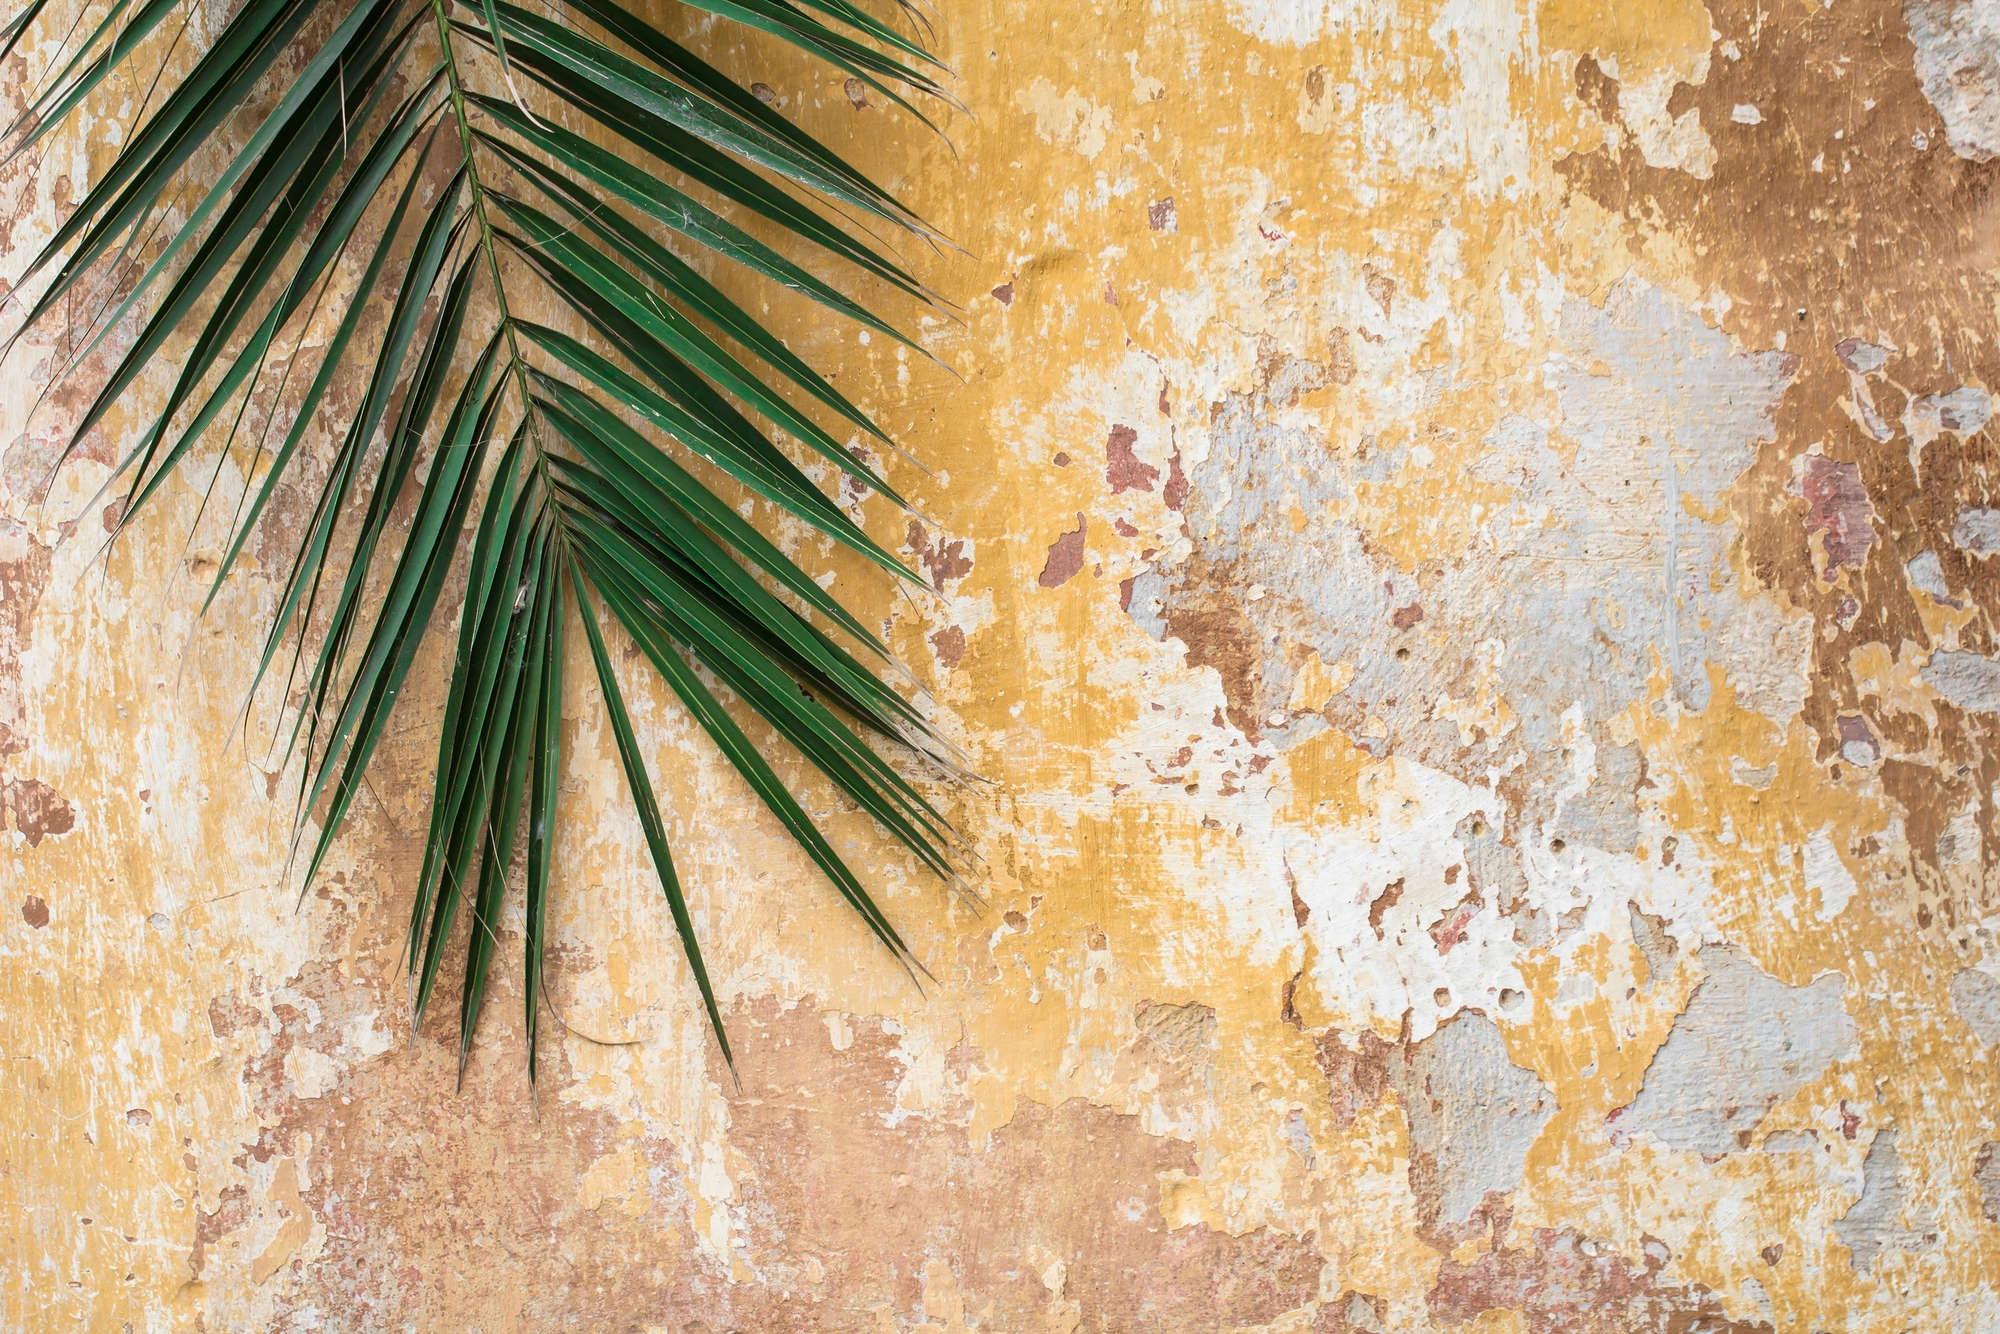             Natuurbehang Palmblad voor stenen muur op matte gladde vliesstof
        